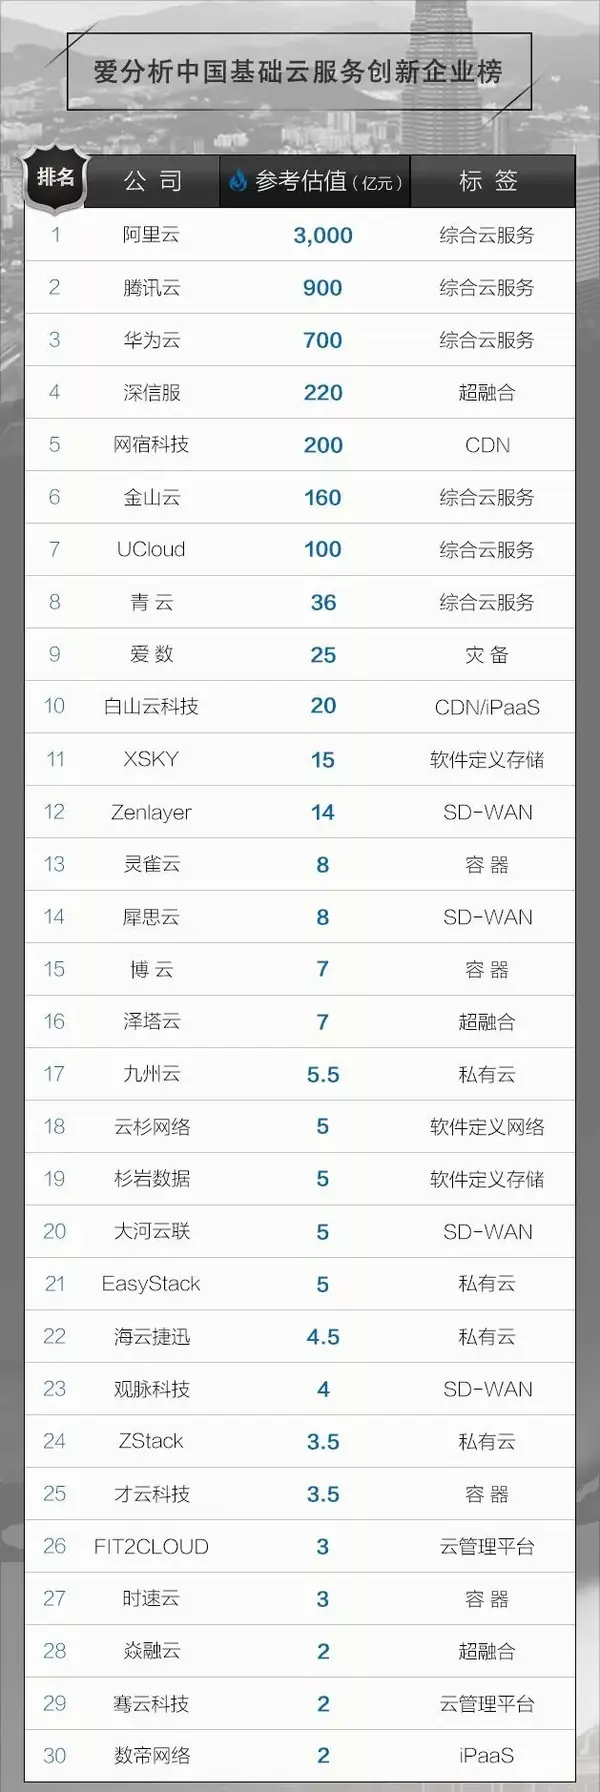 白山云 Zenlayer入选 中国基础云服务创新企业30强 知乎